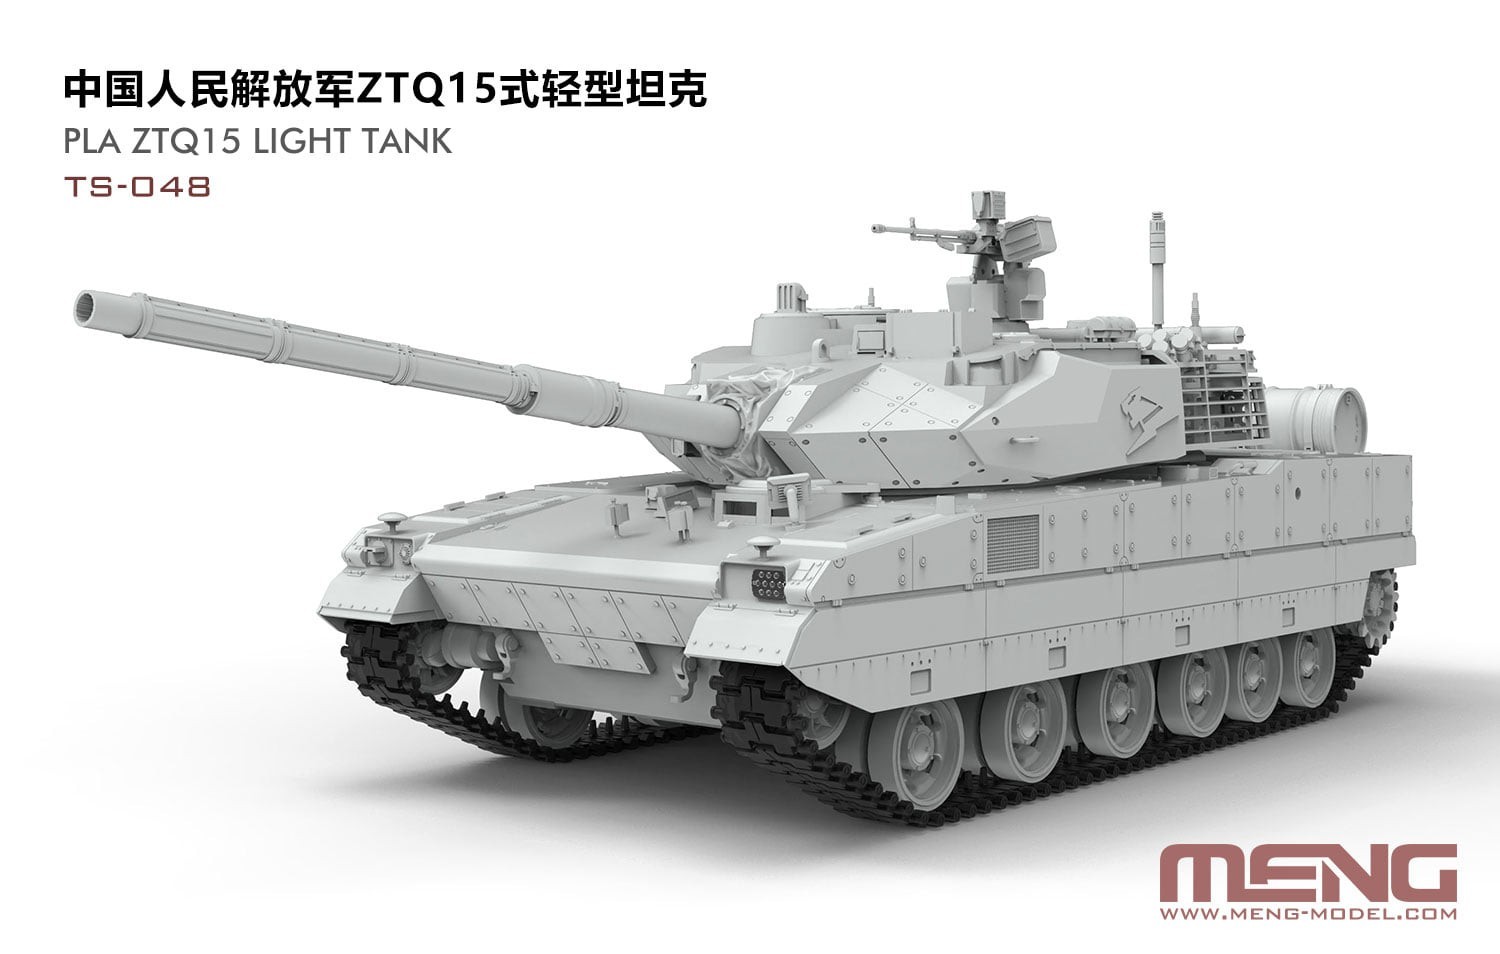 TS-048 1/35 PLA ZTQ15 Light Tank